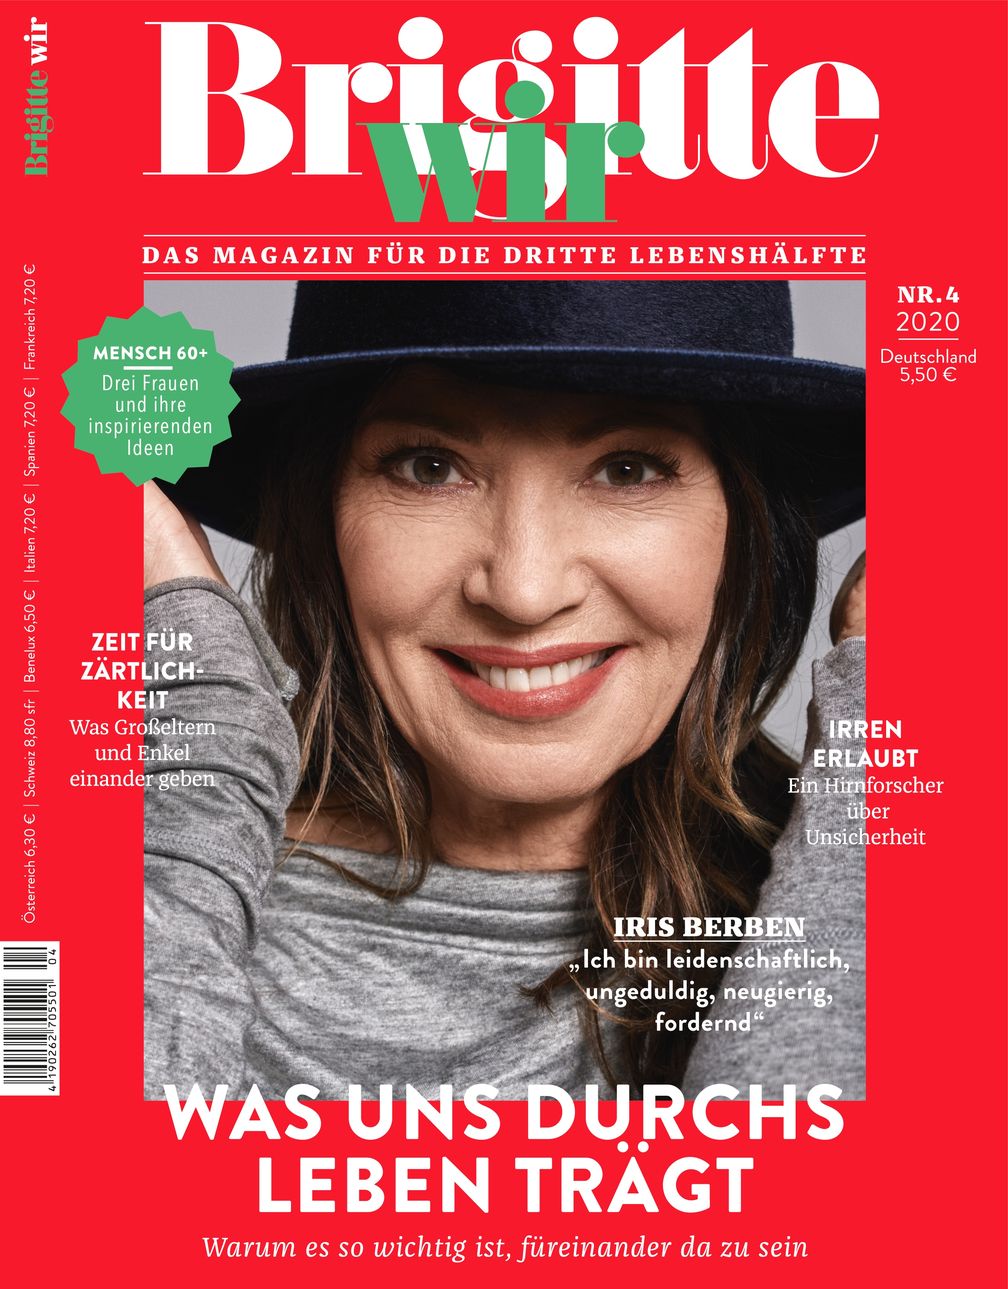 Cover_Brigitte_Wir_04/2020  Bild: "obs/Gruner+Jahr, BRIGITTE WIR"